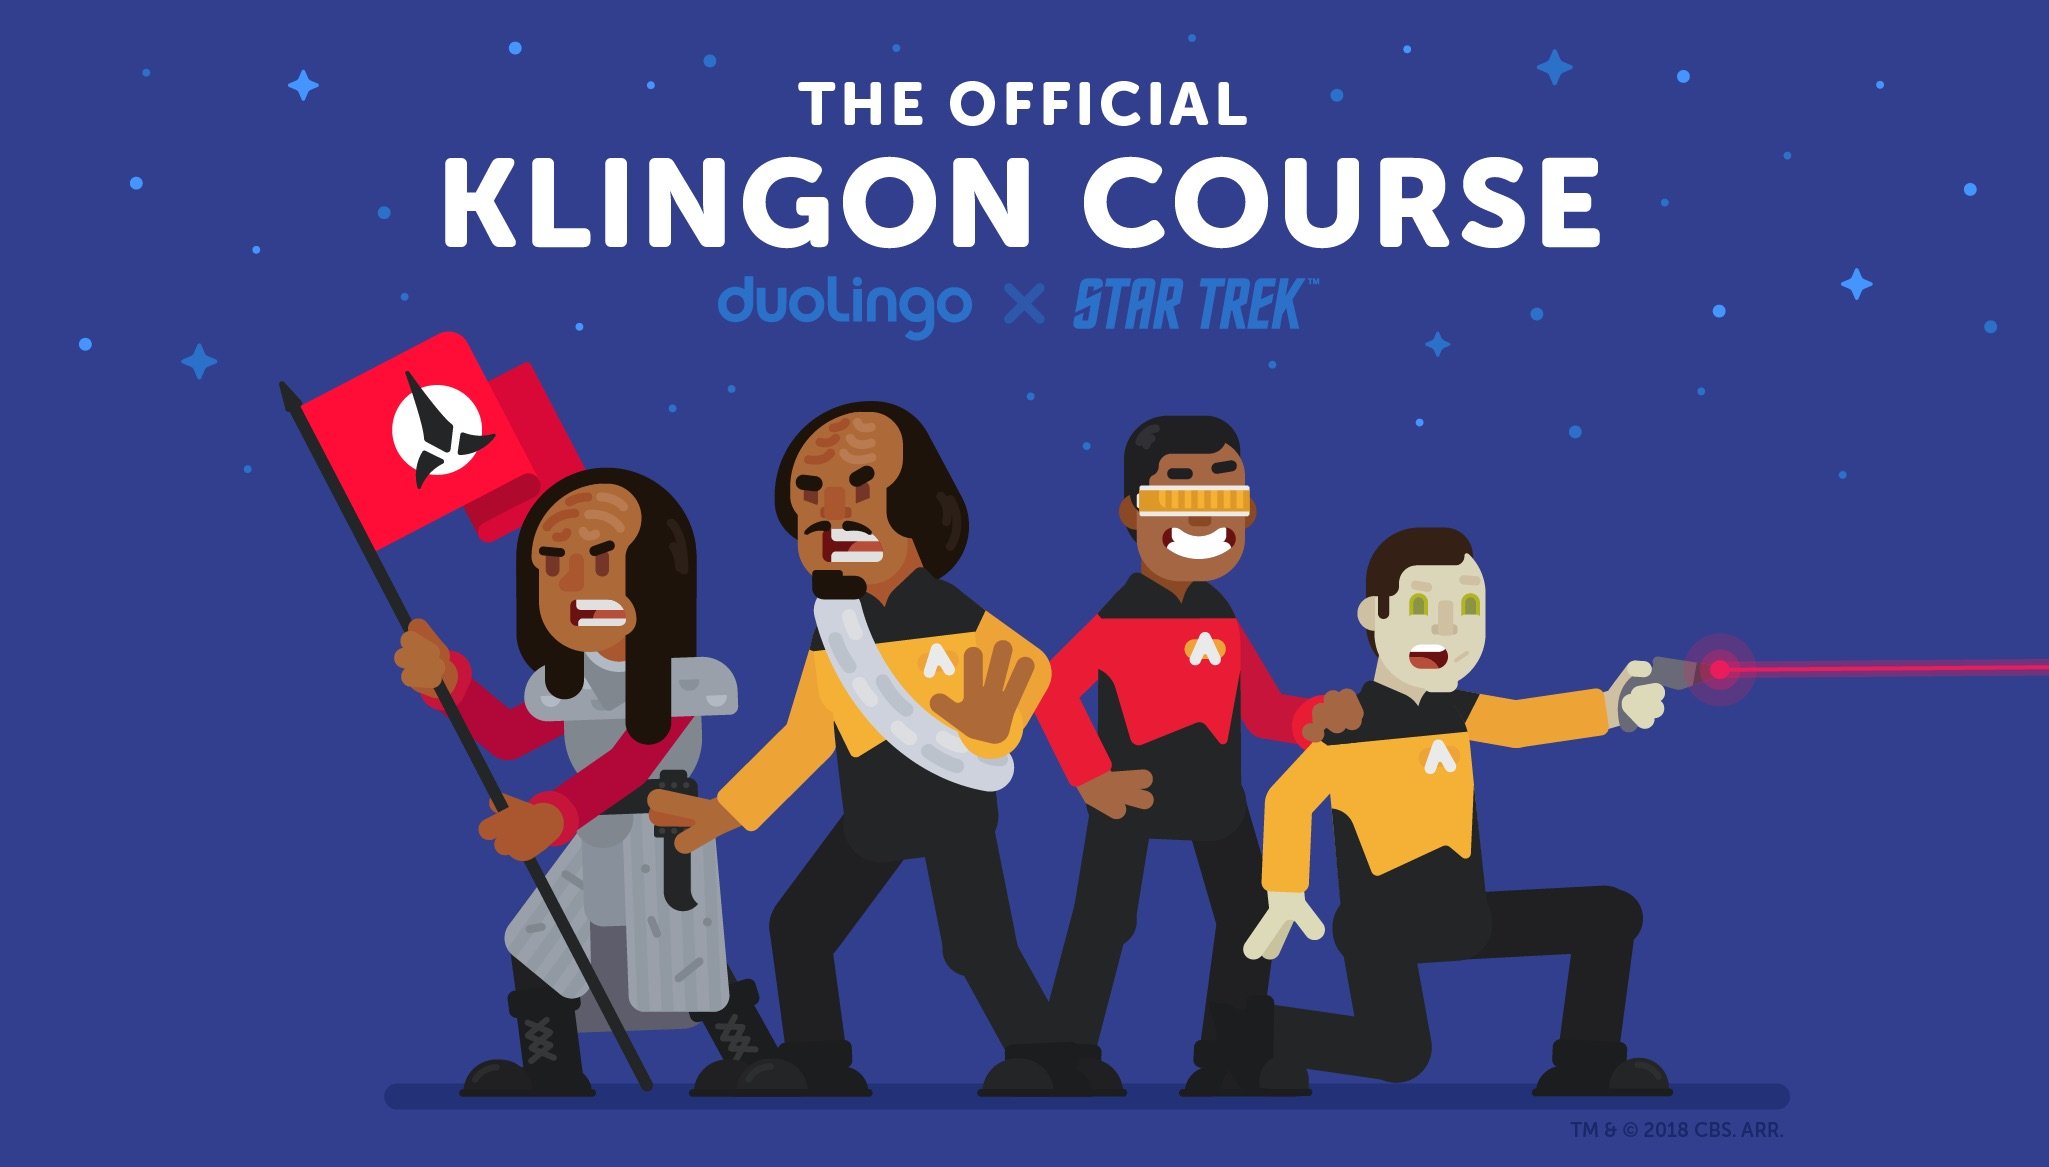 Apprendre le klingon de Star Trek maintenant n'importe qui peut